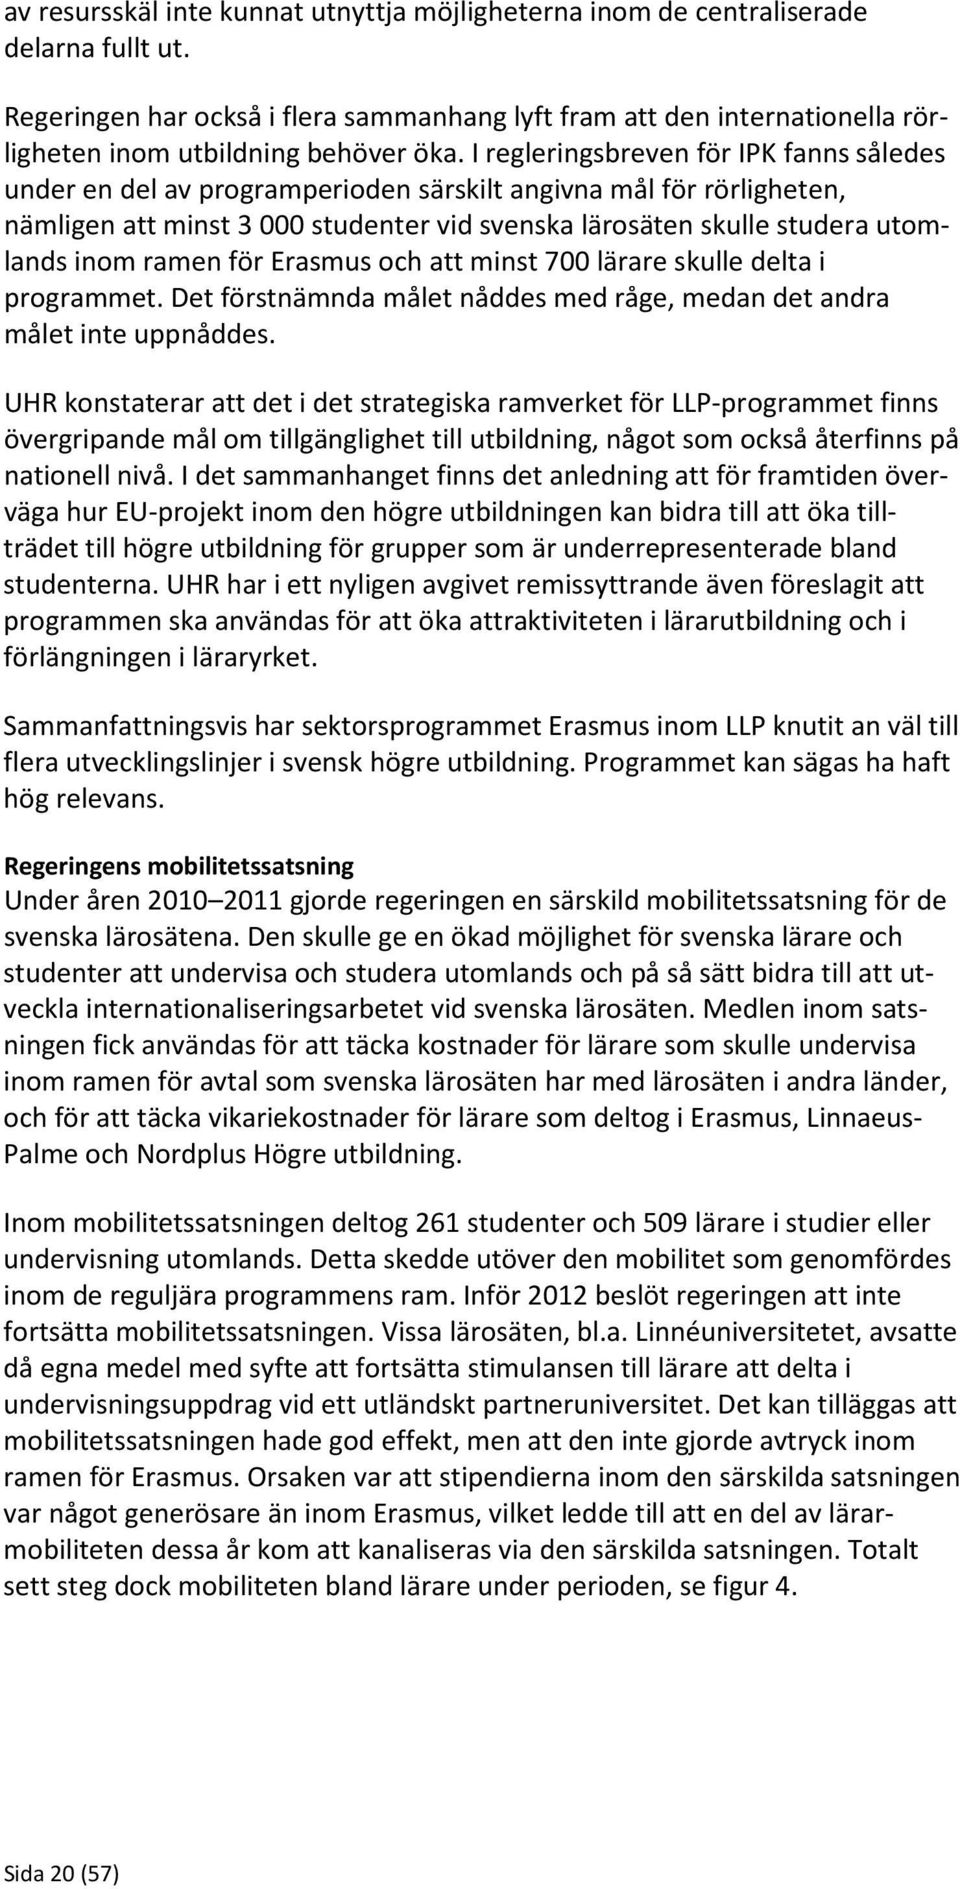 I regleringsbreven för IPK fanns således under en del av programperioden särskilt angivna mål för rörligheten, nämligen att minst 3 000 studenter vid svenska lärosäten skulle studera utomlands inom